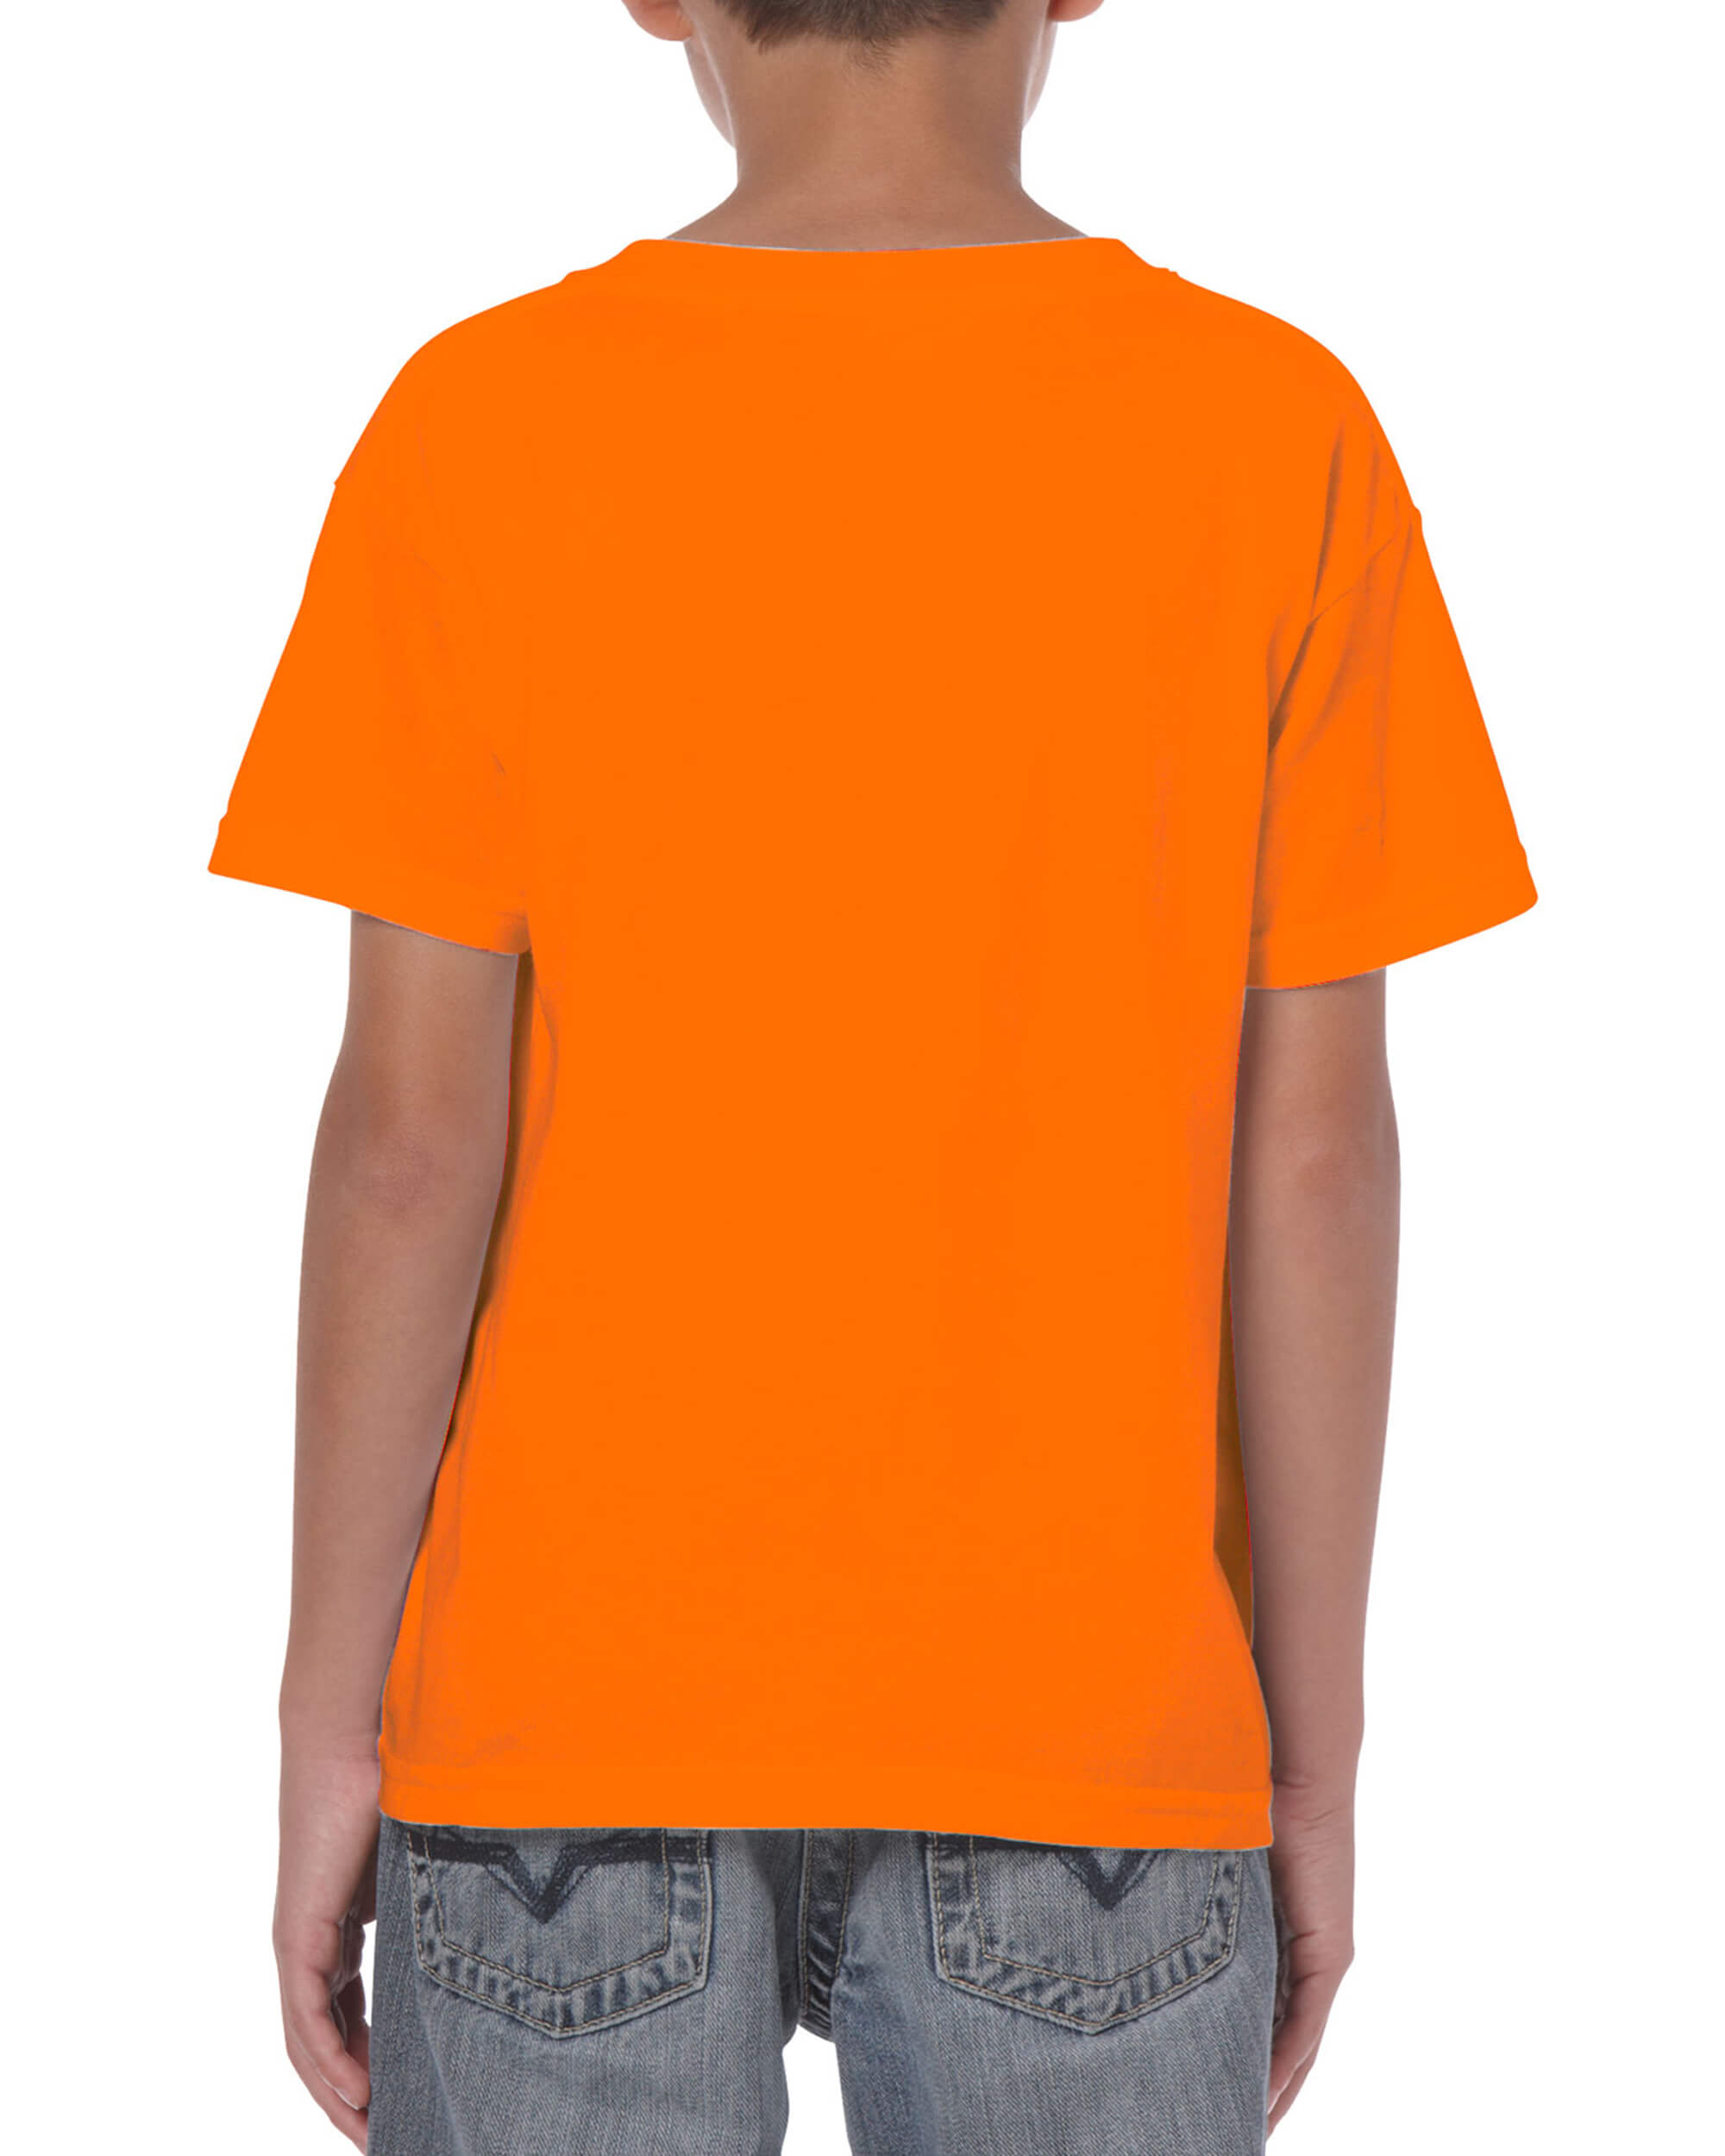 Kids Tshirt - Safety Orange